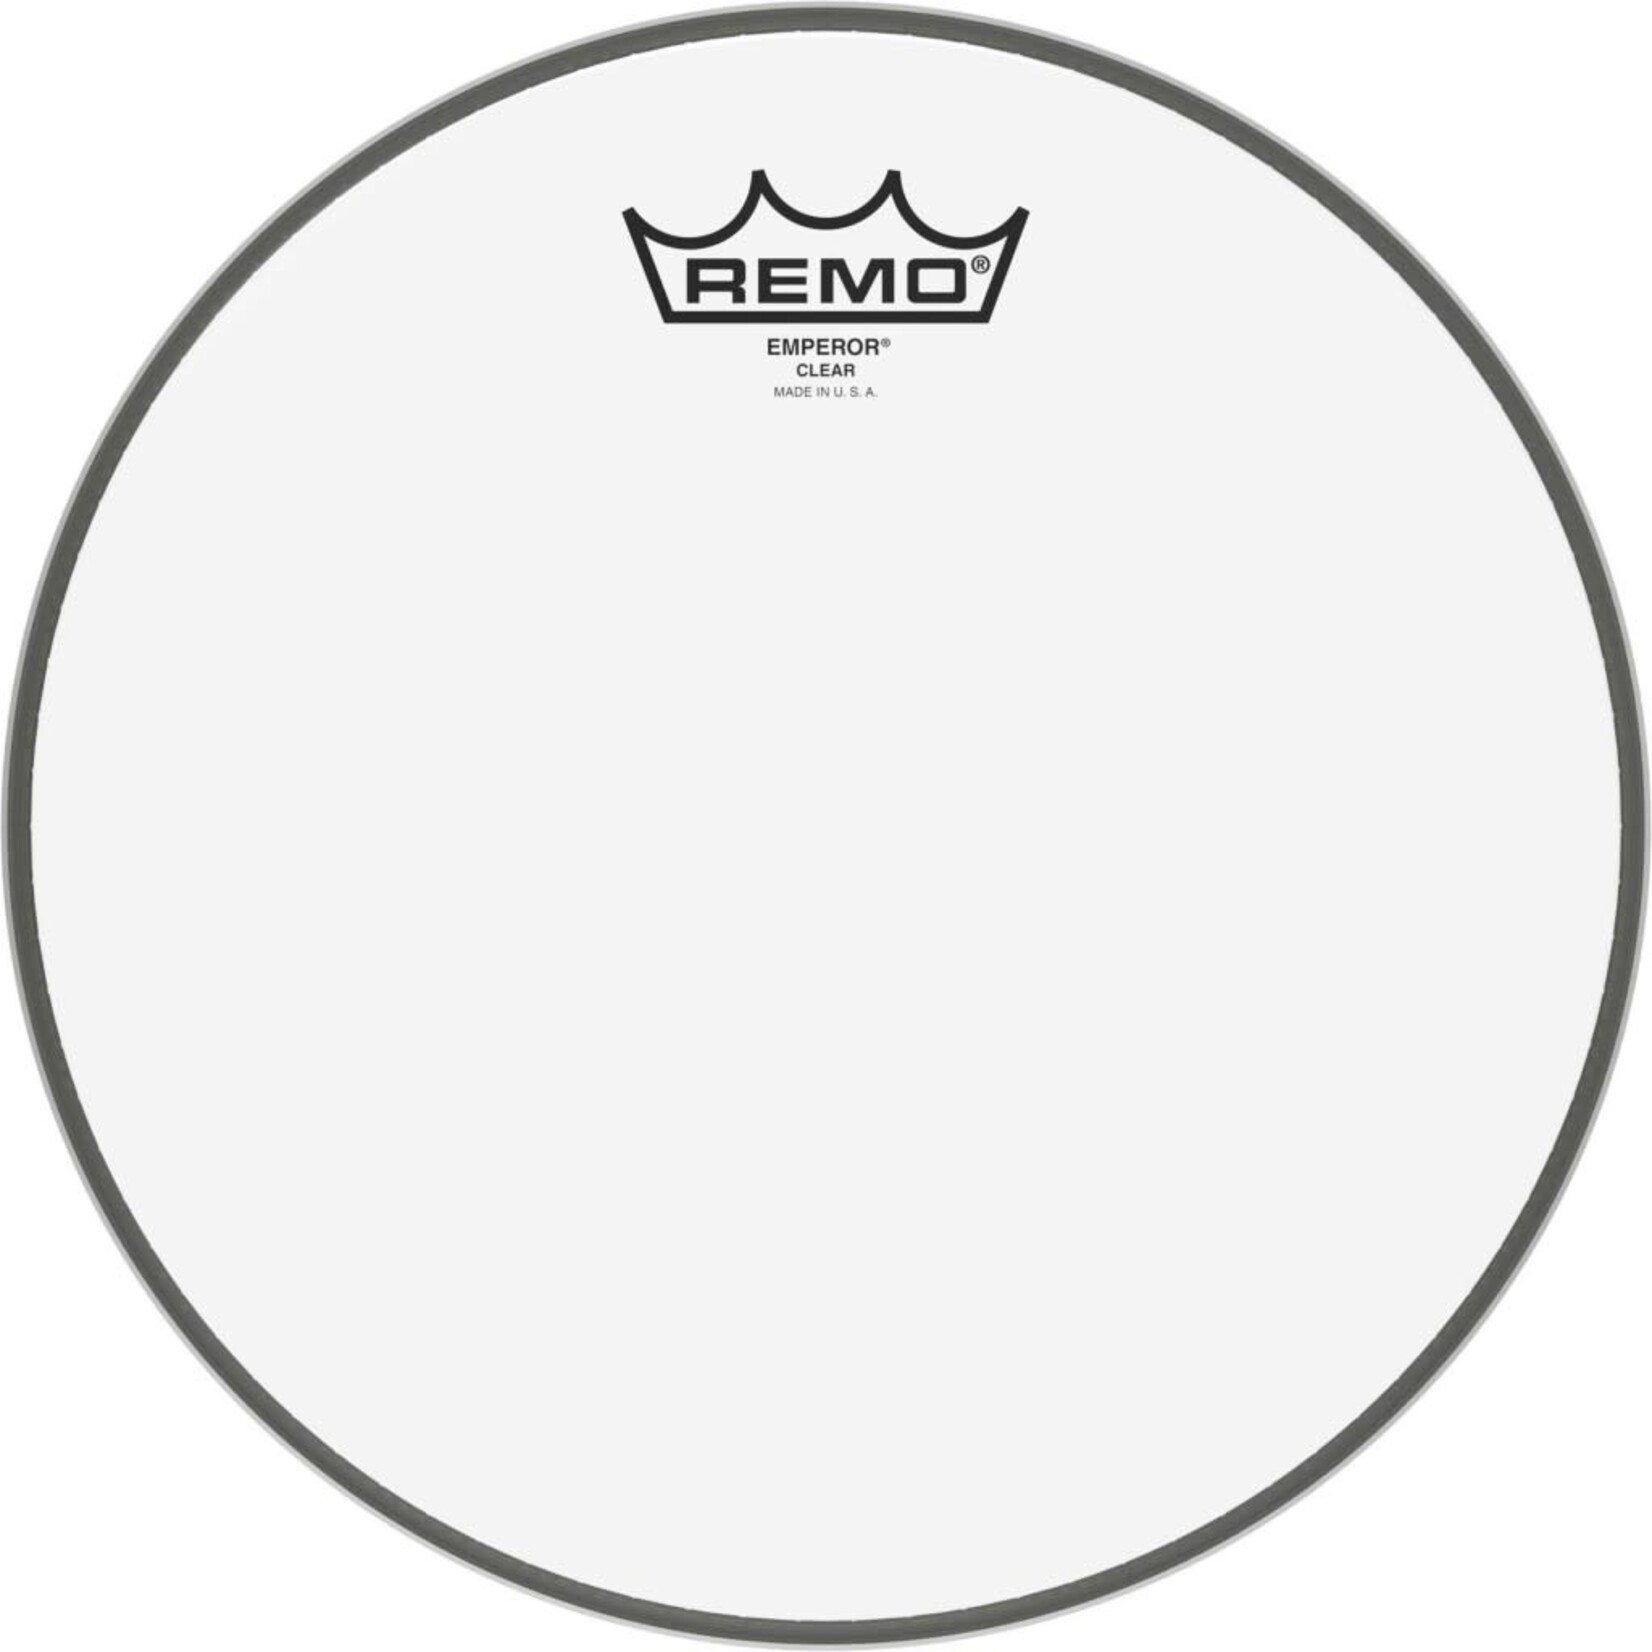 Remo Remo Emperor